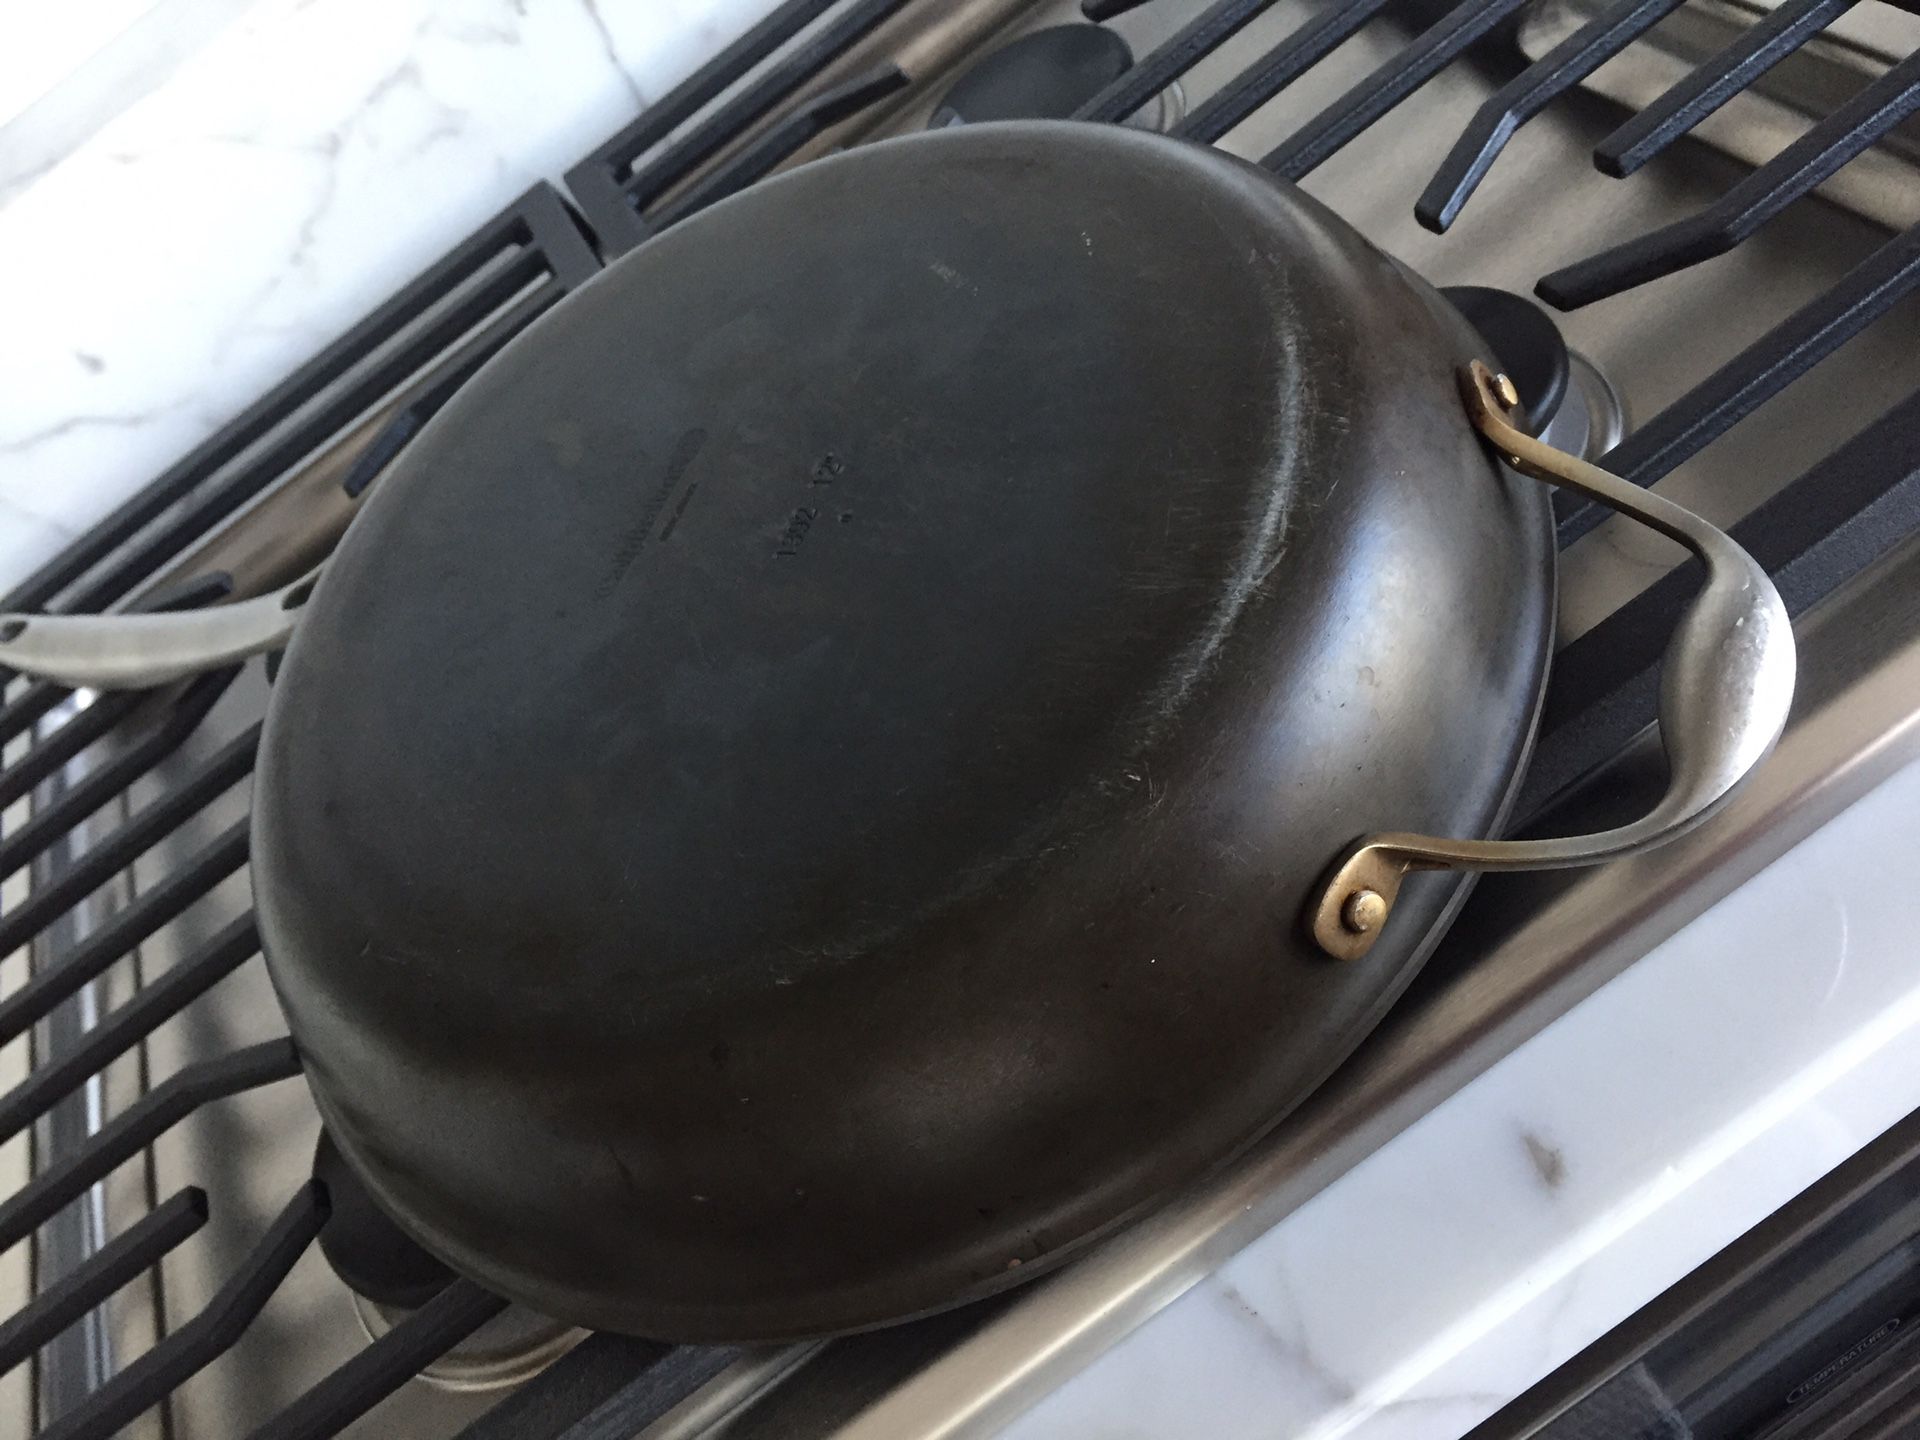 Calphalon 12” frying pan